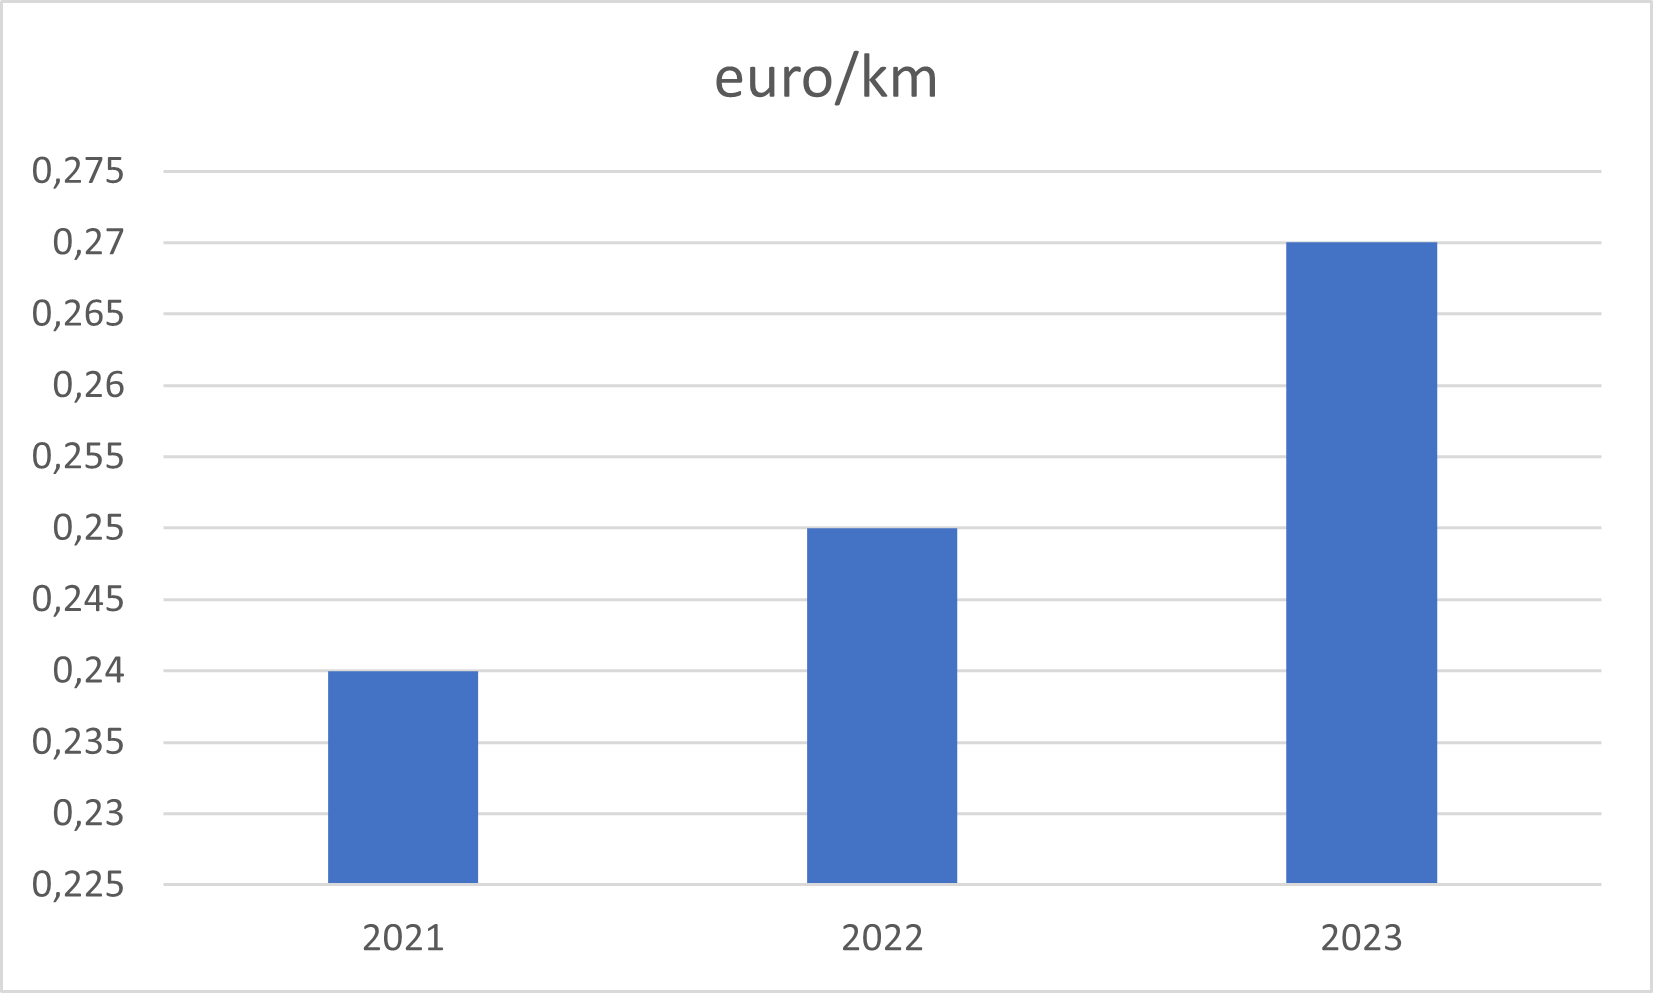 Grafiek voor de evolutie van de fietsvergoedingen van 2021 tot 2023